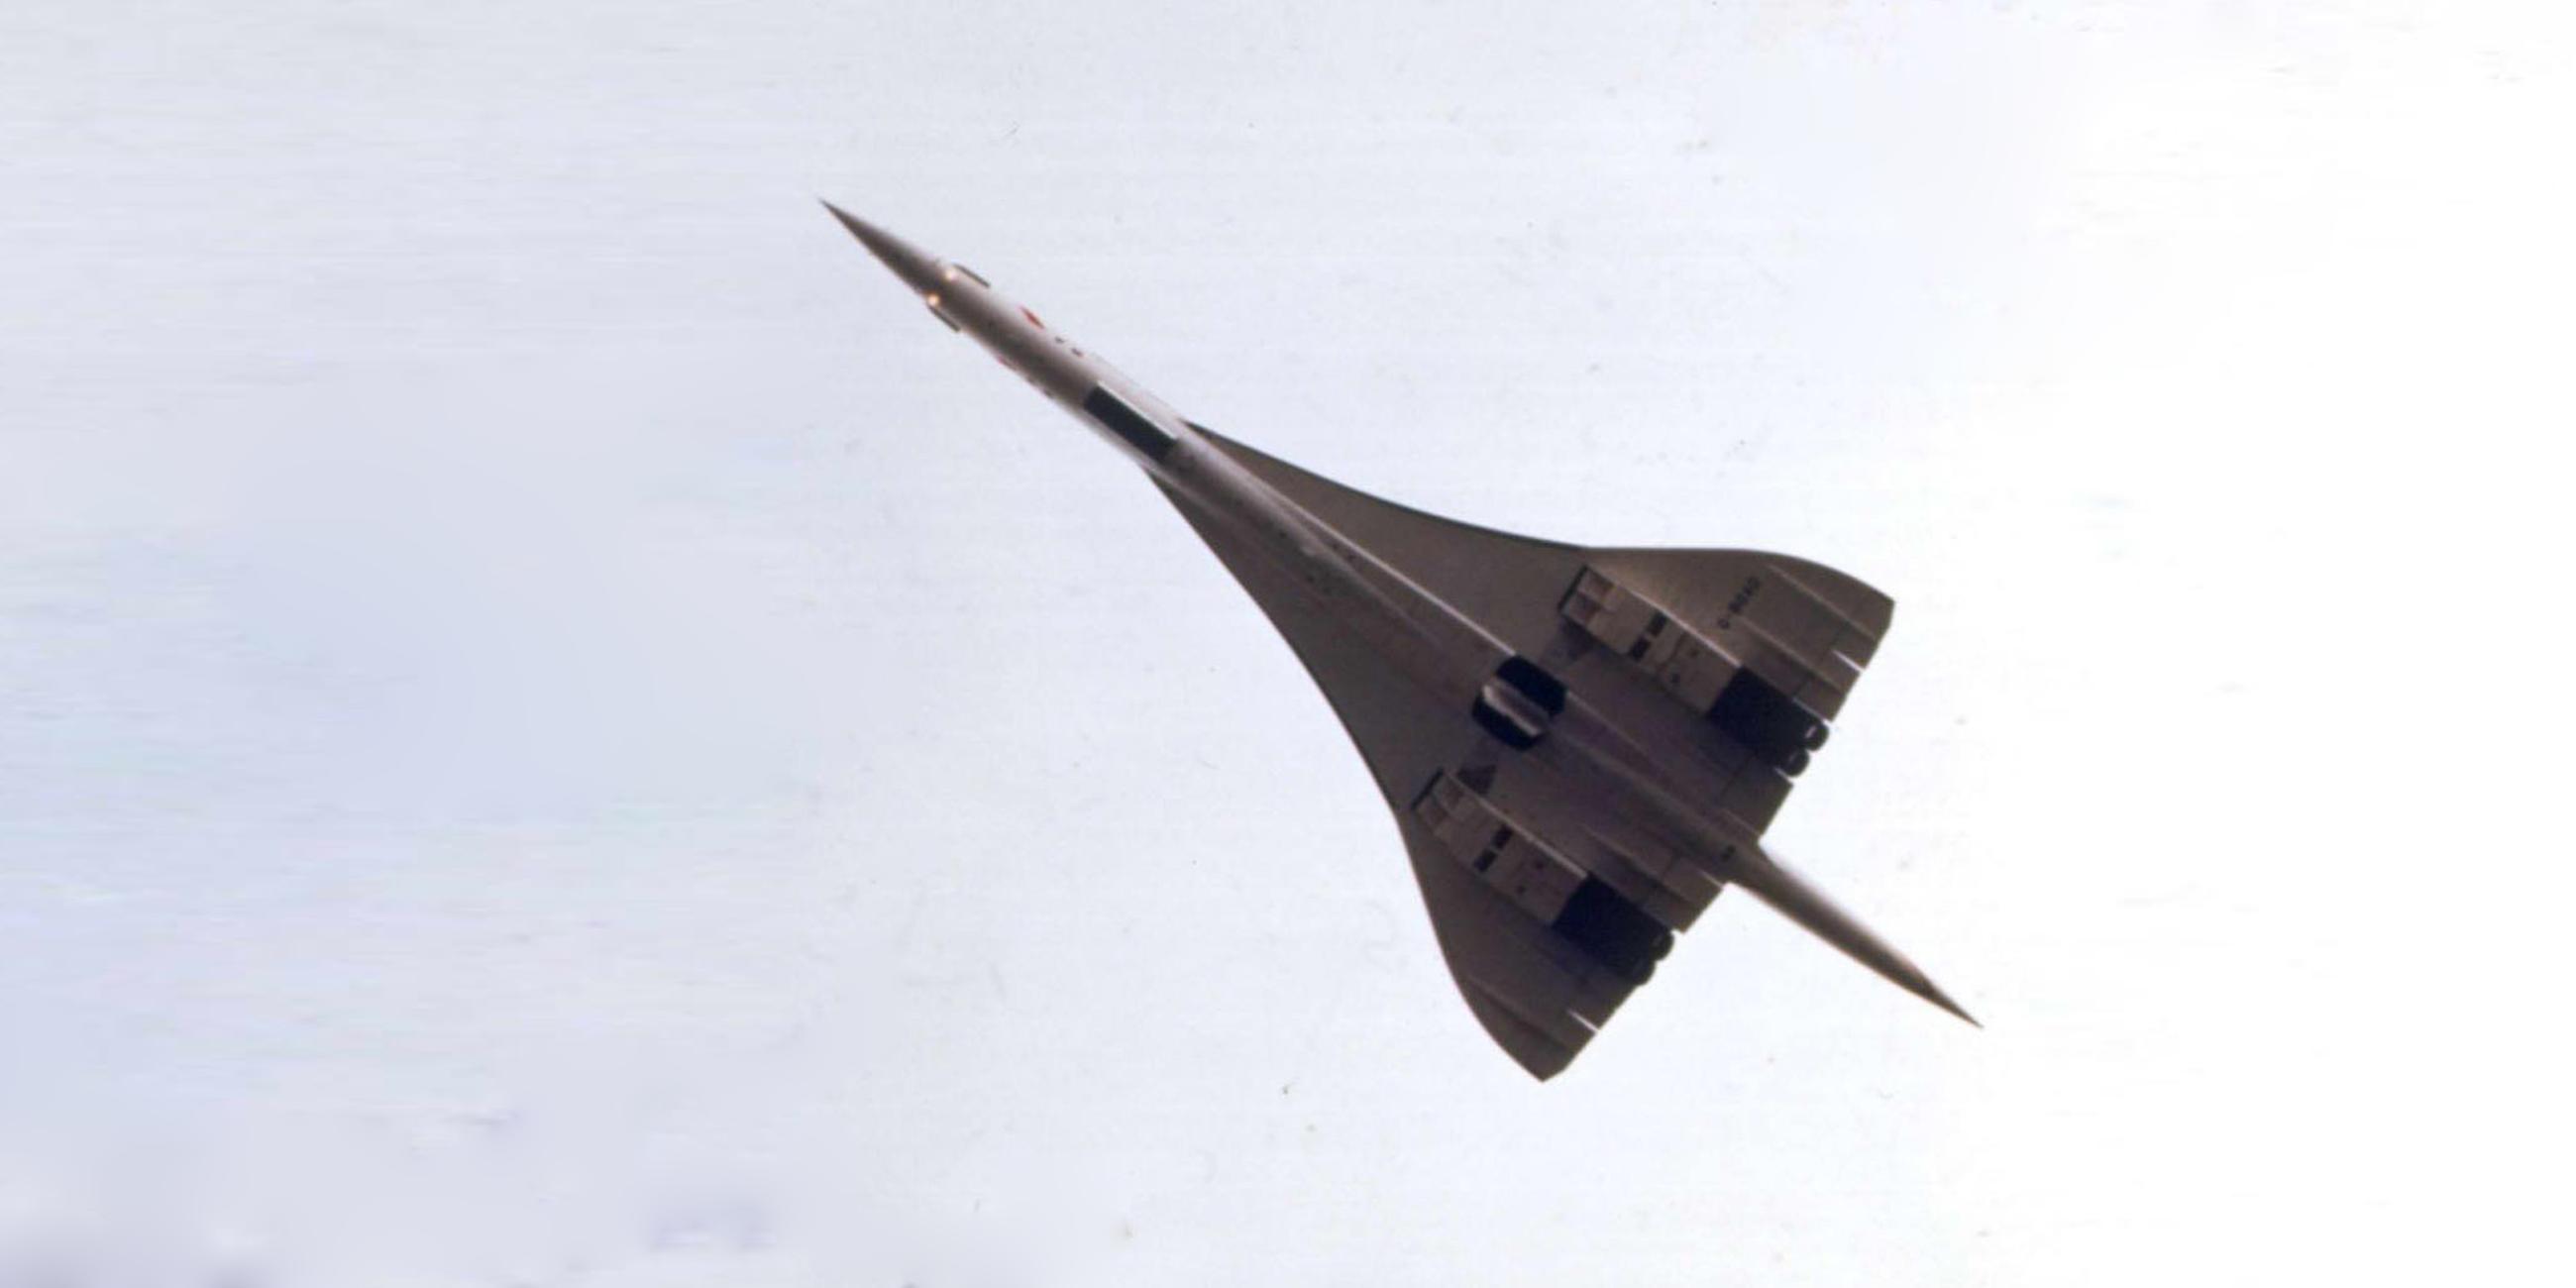 Archiv: Das Überschallflugzeug Concorde fotografiert von Wolfgang Tillmans am 28.11.2000, der dafür den "Turner Prize" erhalten hat